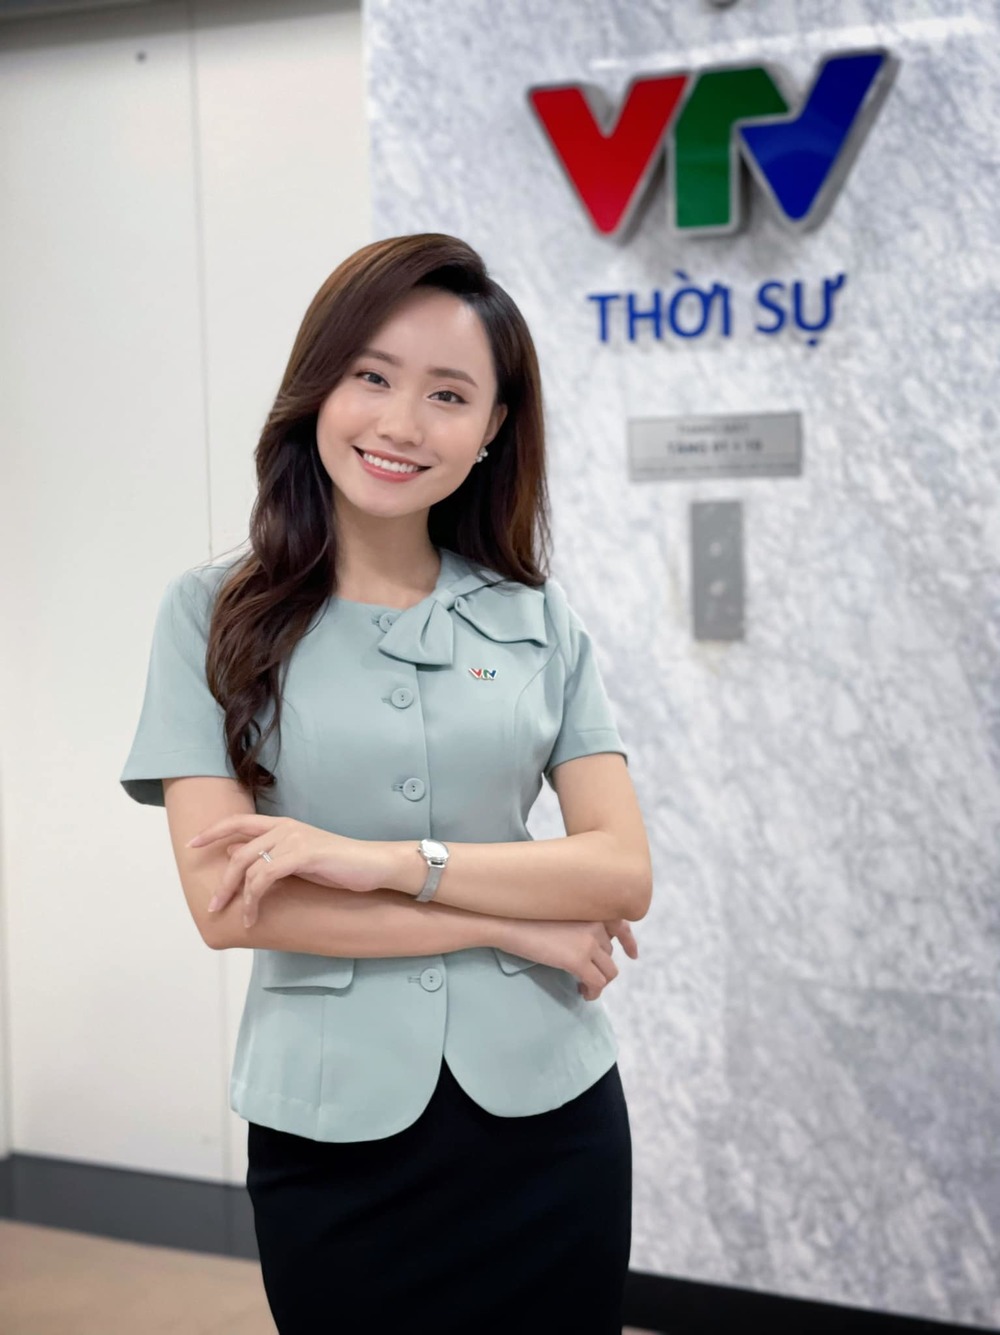  
BTV thời tiết Xuân Anh là một trong những gương mặt nổi bật của VTV. (Ảnh: Facebook Xuan Anh Nguyen) - Tin sao Viet - Tin tuc sao Viet - Scandal sao Viet - Tin tuc cua Sao - Tin cua Sao